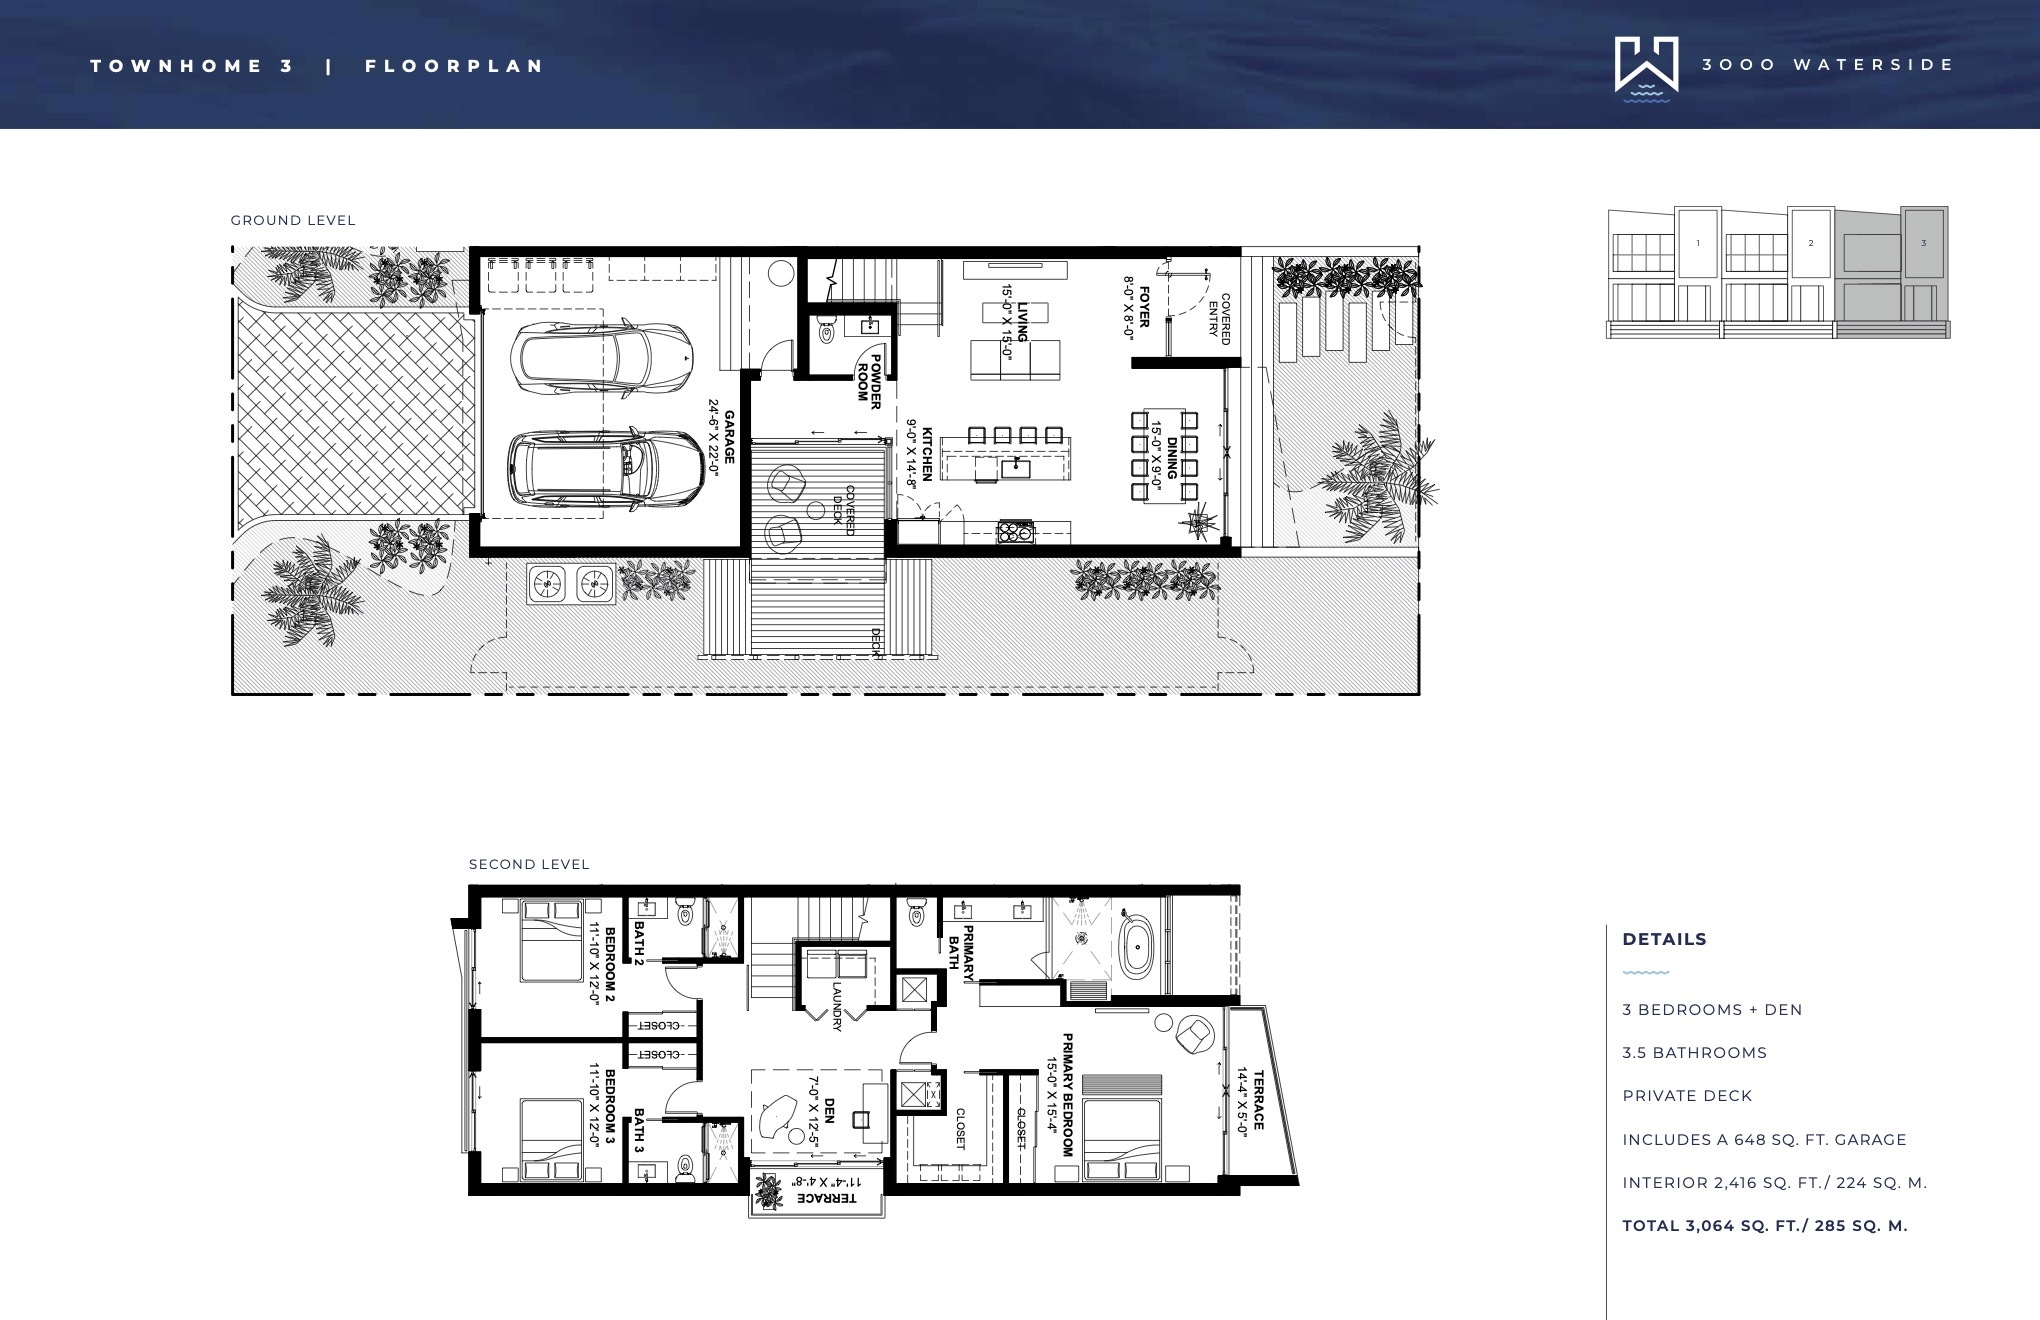 Floor Plan for 3000 Waterside Fort Lauderdale Floorplans, Townhome 3